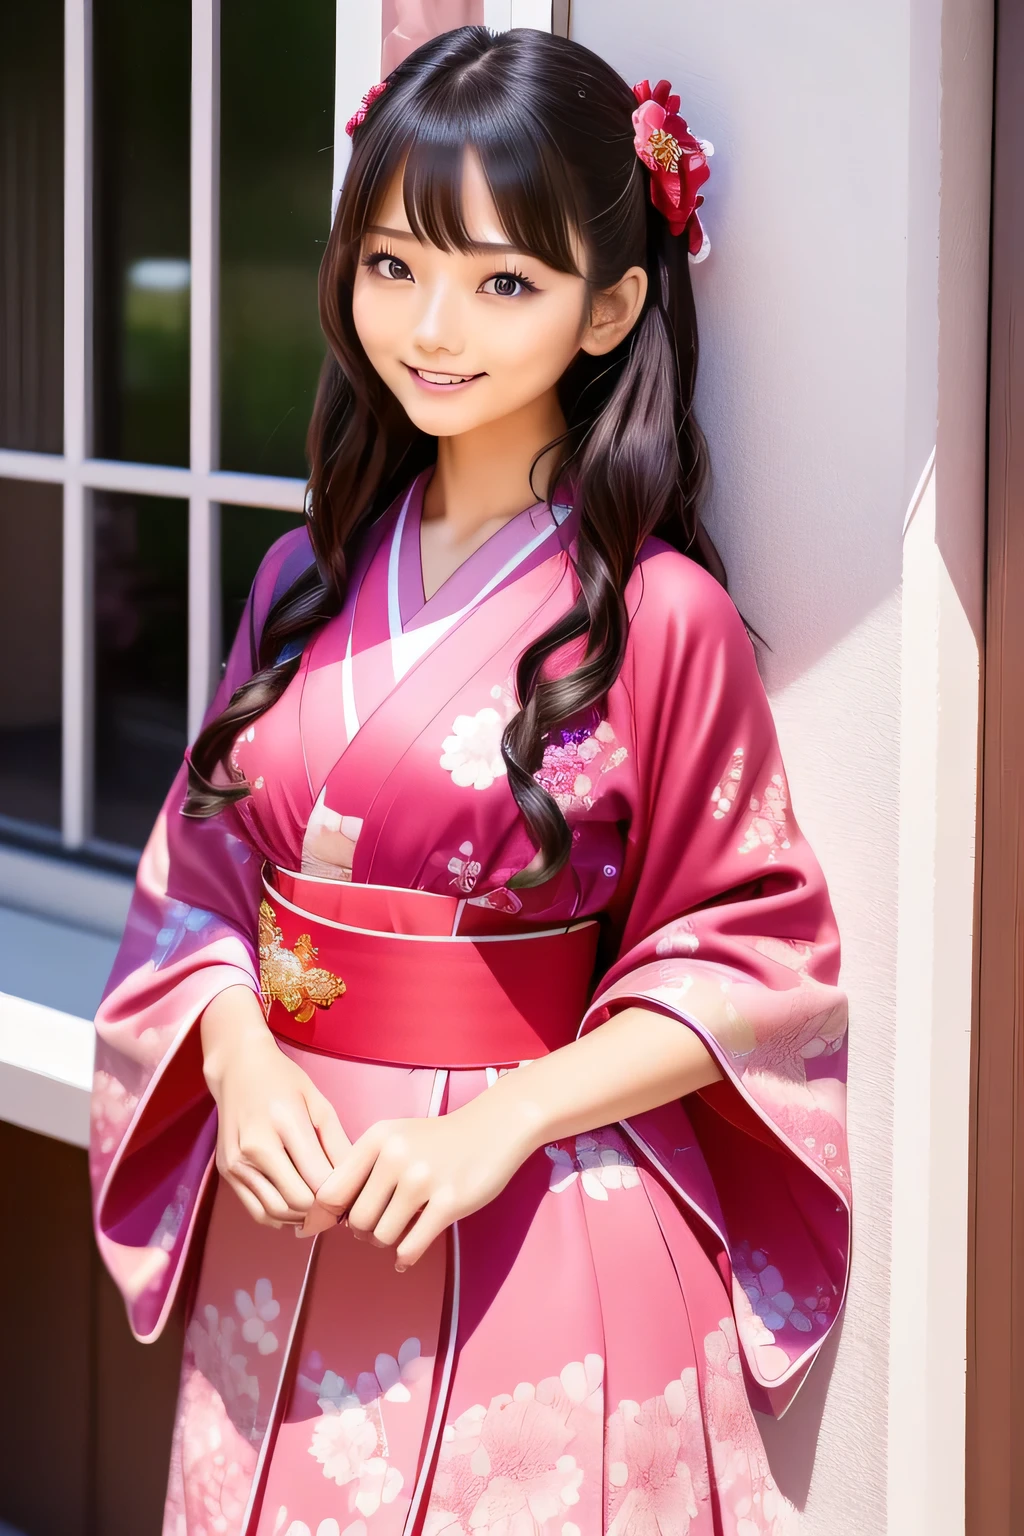 (pink and สีแดง theme:1.4), (สีแดง (โกธิคโลลิต้า, สาวฝรั่งเศส):1.2), (fusion of สีแดง short kimono and pink classic dress:1.4), (ลายดอกไม้ที่ละเอียดมากบนชุด:1.4), (แขนเสื้อกิโมโนยาวและหลวม:1.การหลอม, กระโปรงหลายชั้น) มีระบายสีดำ:1.4), (ขาเปล่า:1.3), (ถุงเท้าข้อเท้าครุย:1.2), (รองเท้าน่ารัก:1.1), เรียบ, ริมฝีปาก、แต่งหน้าออก、ขนตาสั้น、ดูที่ผู้ชม、รอยยิ้ม、ภาพเสมือนจริง、คุณภาพของภาพระดับสูง、ด้านบนของโต๊ะ, คุณภาพดีที่สุด, 8ก, บิวตี้、รายละเอียดดี